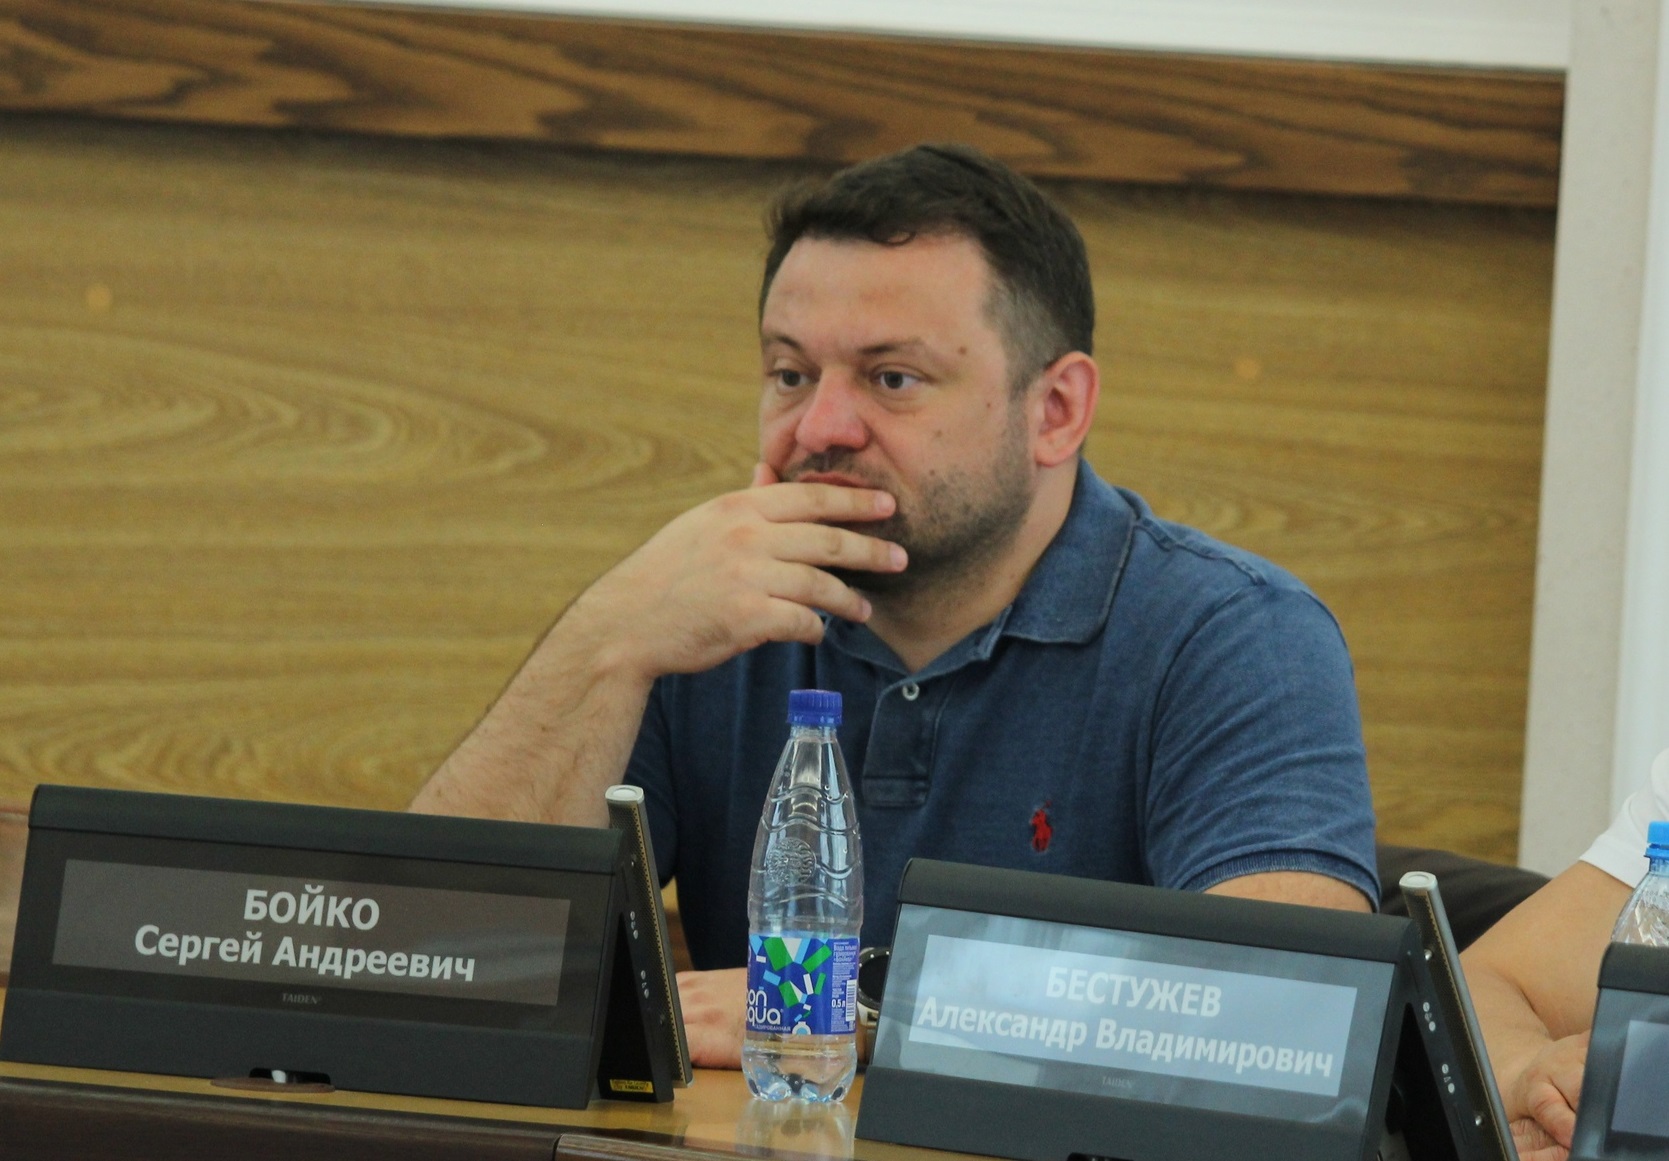 Сергей Бойко является депутатом на округе 49.&nbsp;Член постоянных комиссий по городскому хозяйству и по контролю за исполнением органами местного самоуправления и их должностными лицами полномочий по решению вопросов местного значения.